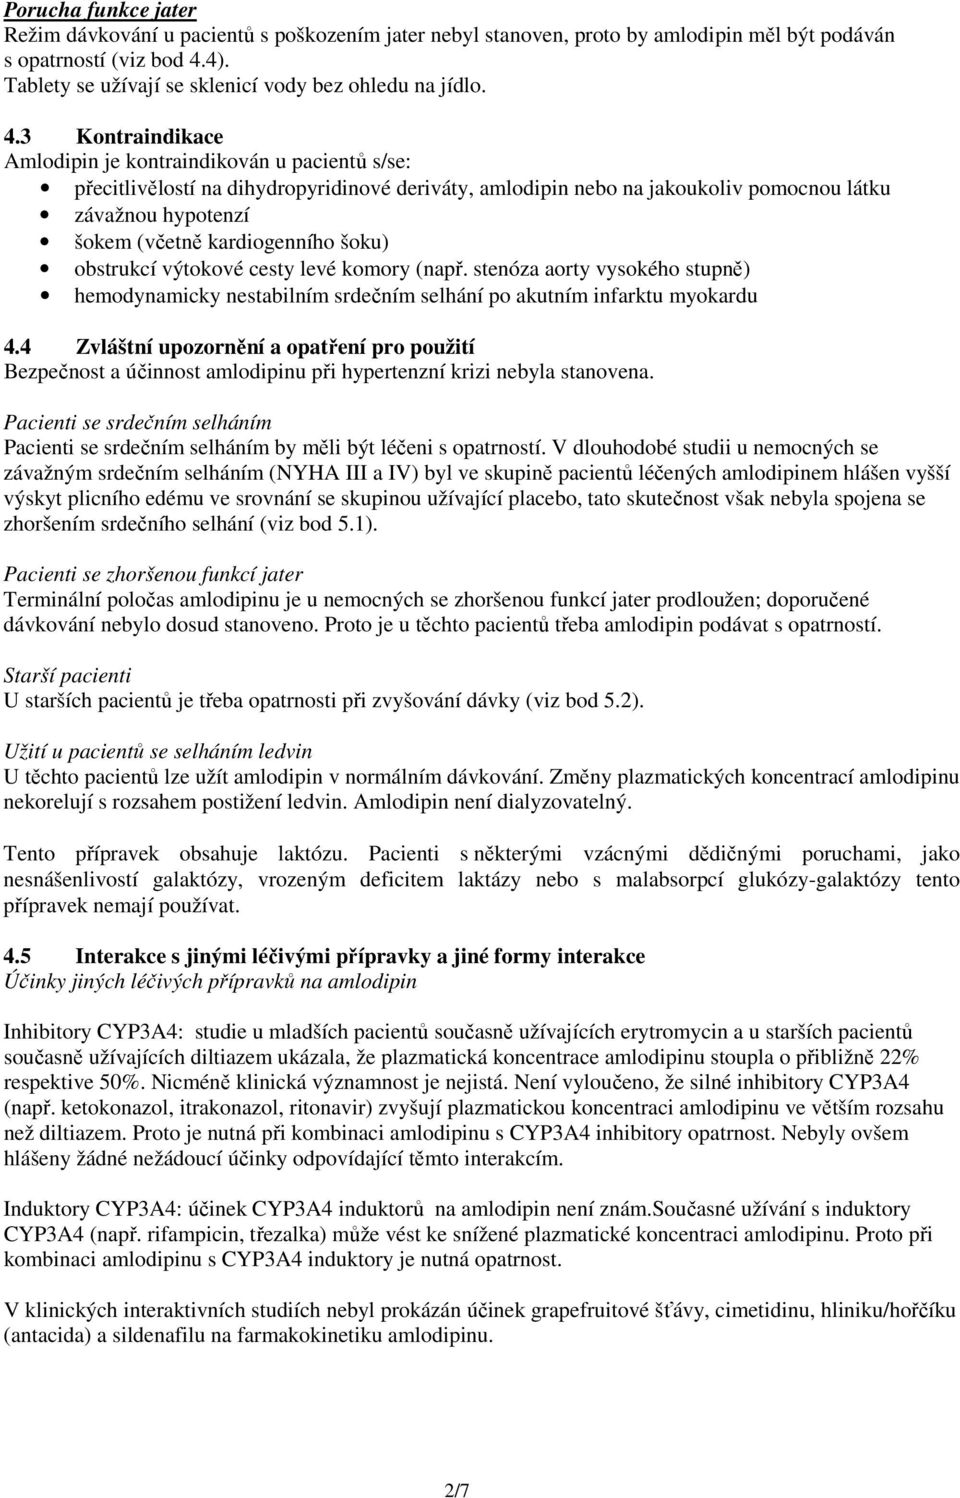 3 Kontraindikace Amlodipin je kontraindikován u pacientů s/se: přecitlivělostí na dihydropyridinové deriváty, amlodipin nebo na jakoukoliv pomocnou látku závažnou hypotenzí šokem (včetně